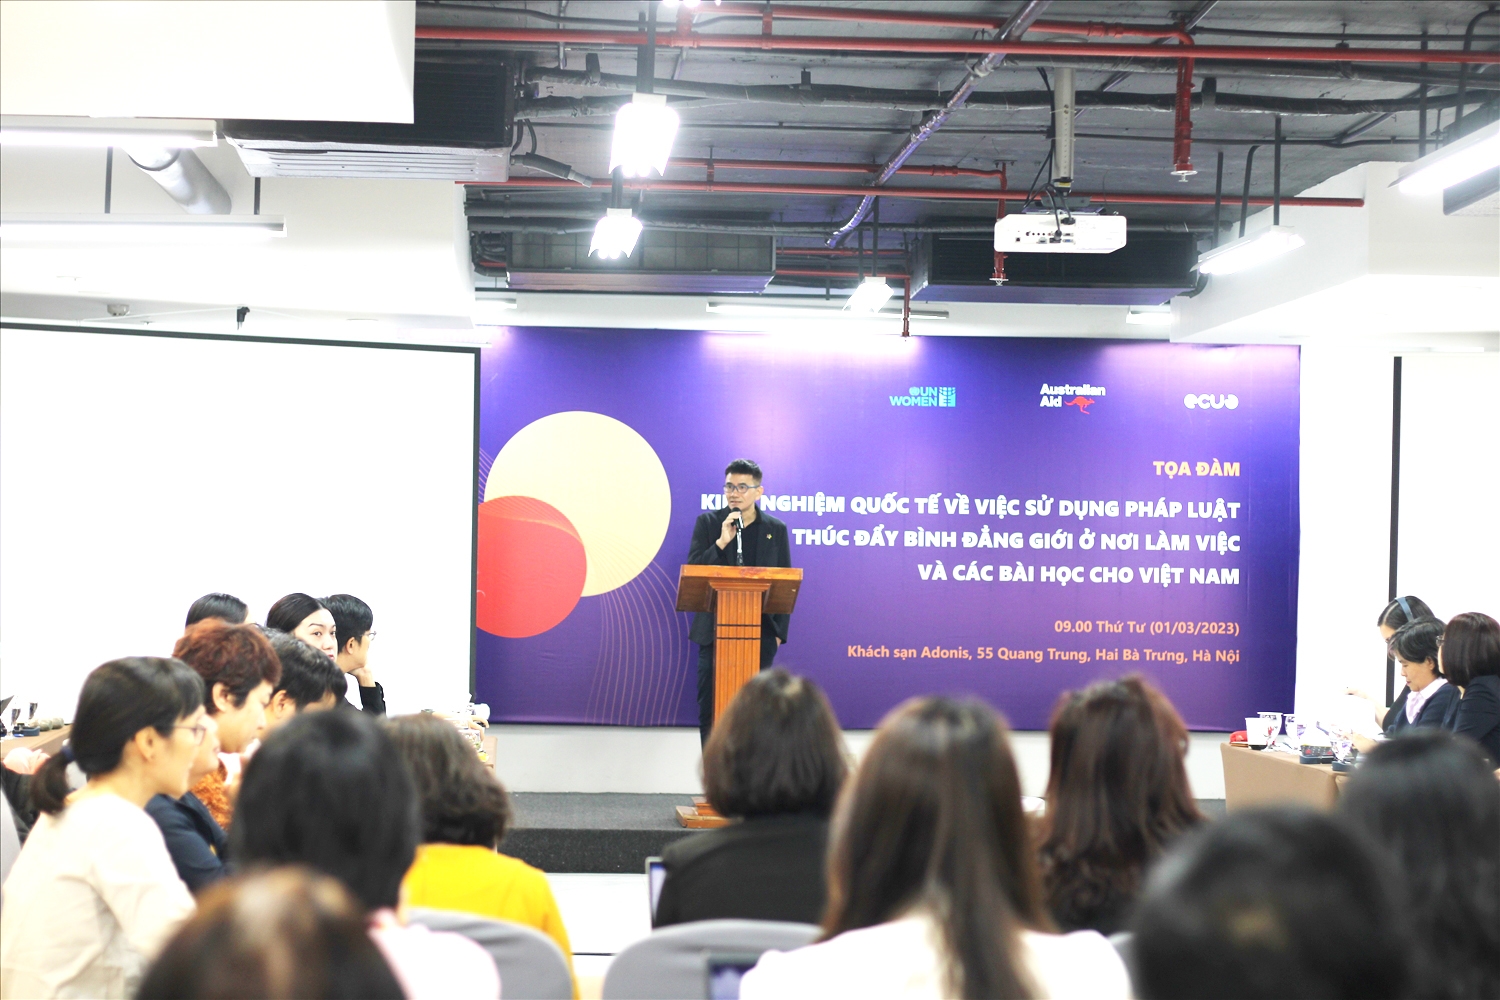 Tọa đàm kinh nghiệm quốc tế về việc sử dụng pháp luật thúc đẩy bình đẳng giới ở nơi làm việc và các bài học cho Việt Nam được diễn ra ngày 1/3, tại Hà Nội